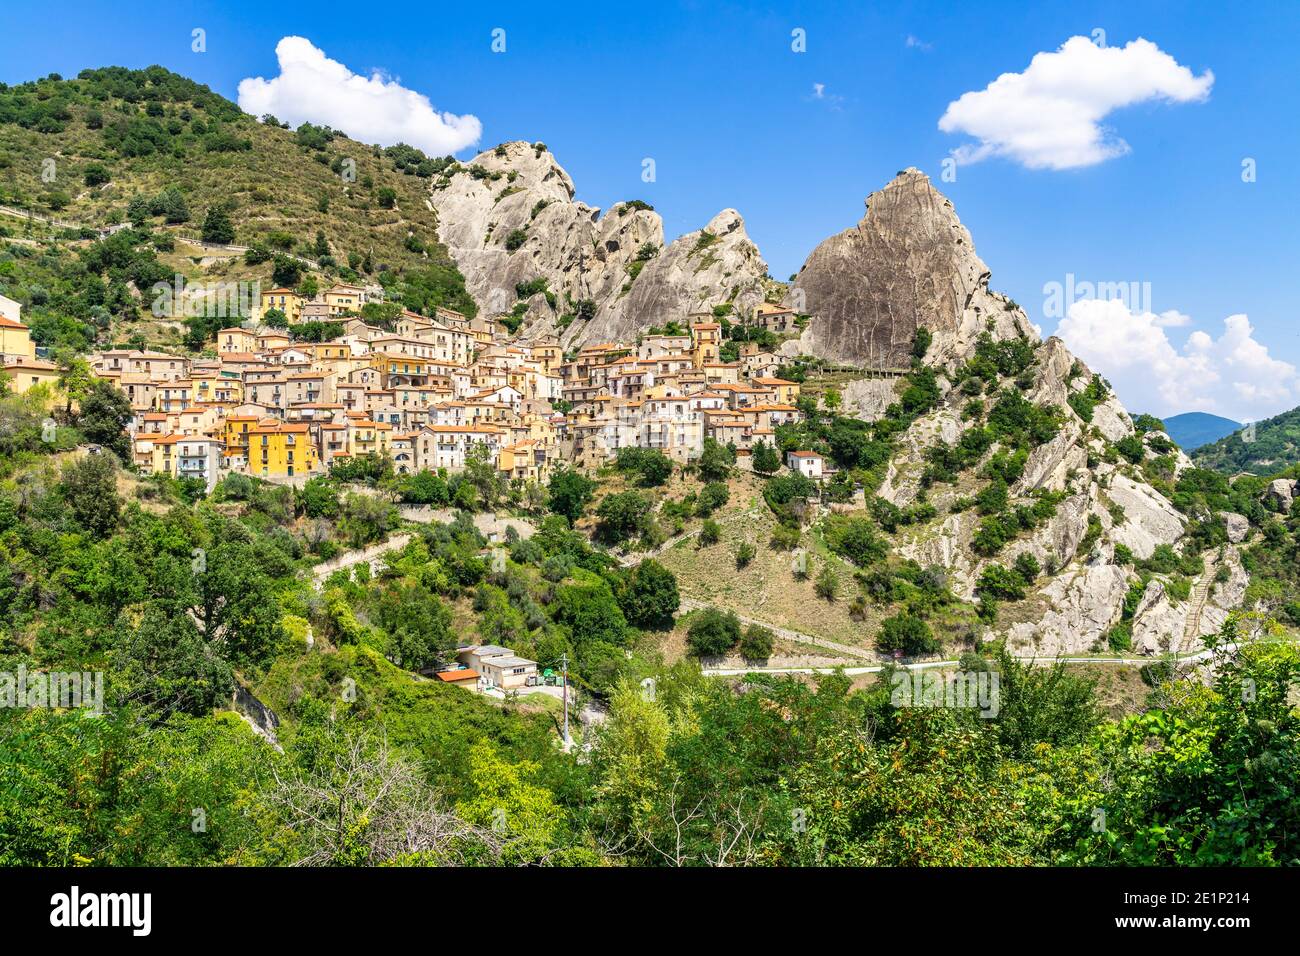 Blick auf Castelmezzano, ein typisches Dorf unter den Gipfeln der Dolomiti lucane in der Region Basilicata, Italien Stockfoto